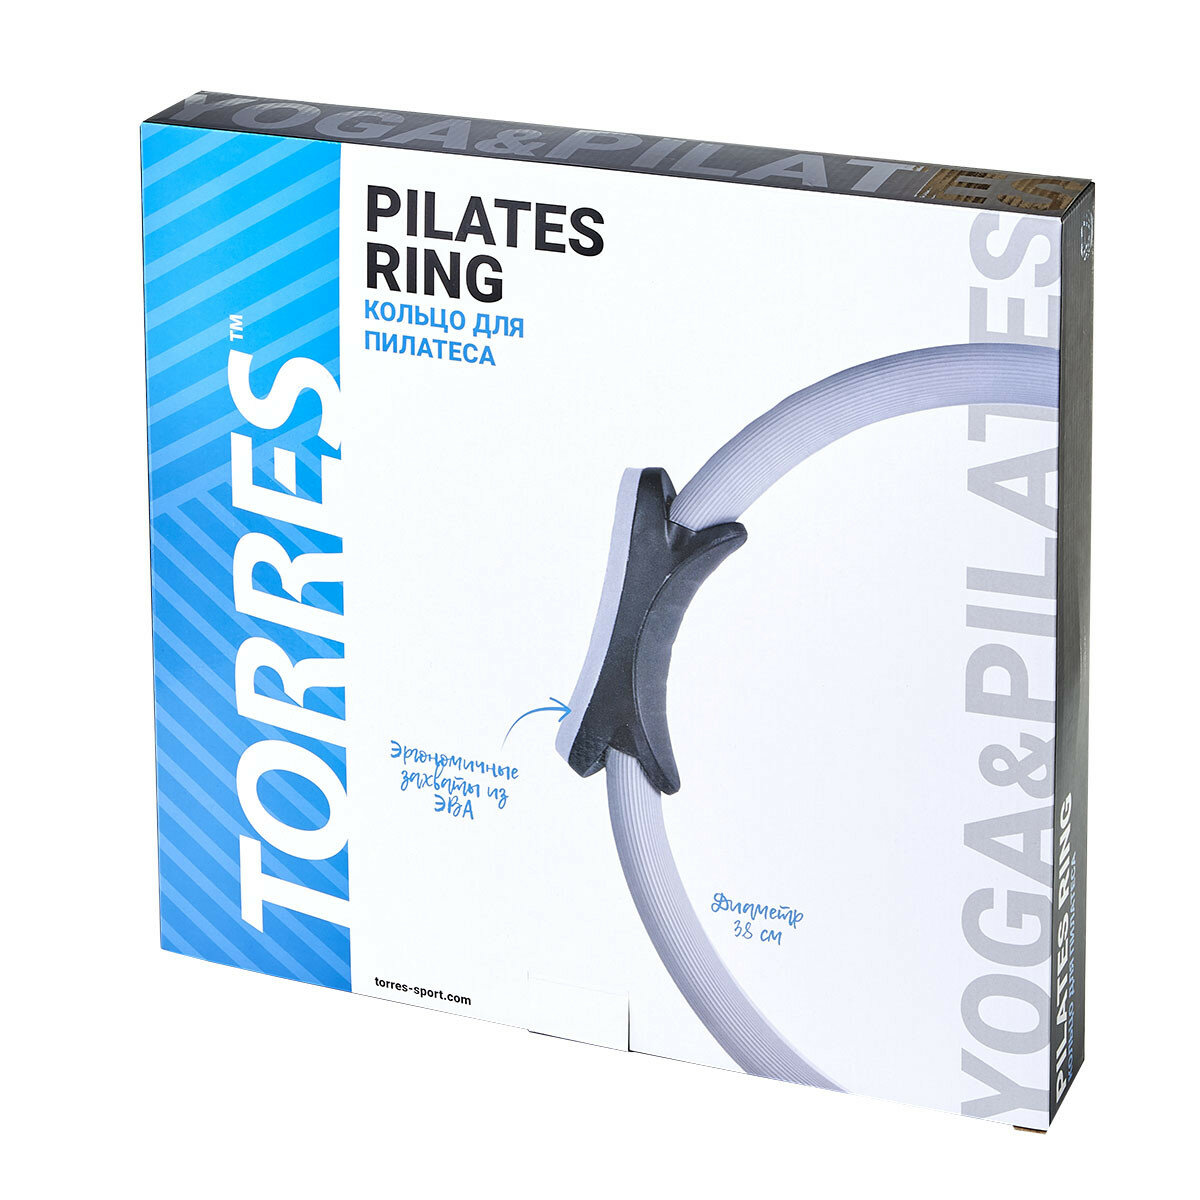 Пилатес-круг Torres - фото №3